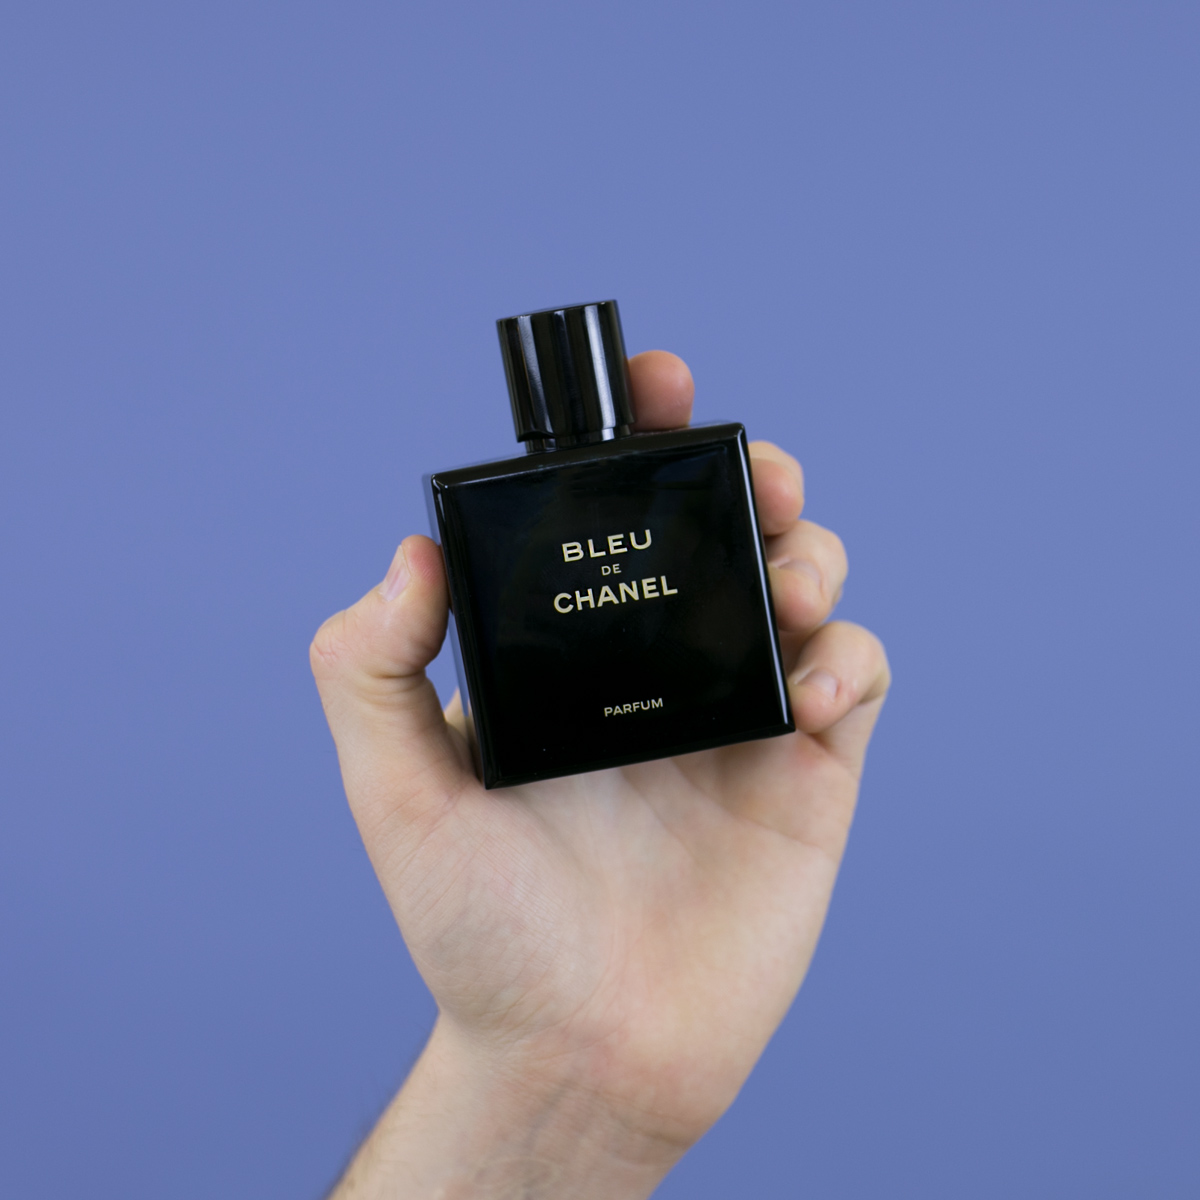 Bleu de Chanel Parfum by Chanel » Reviews & Perfume Facts